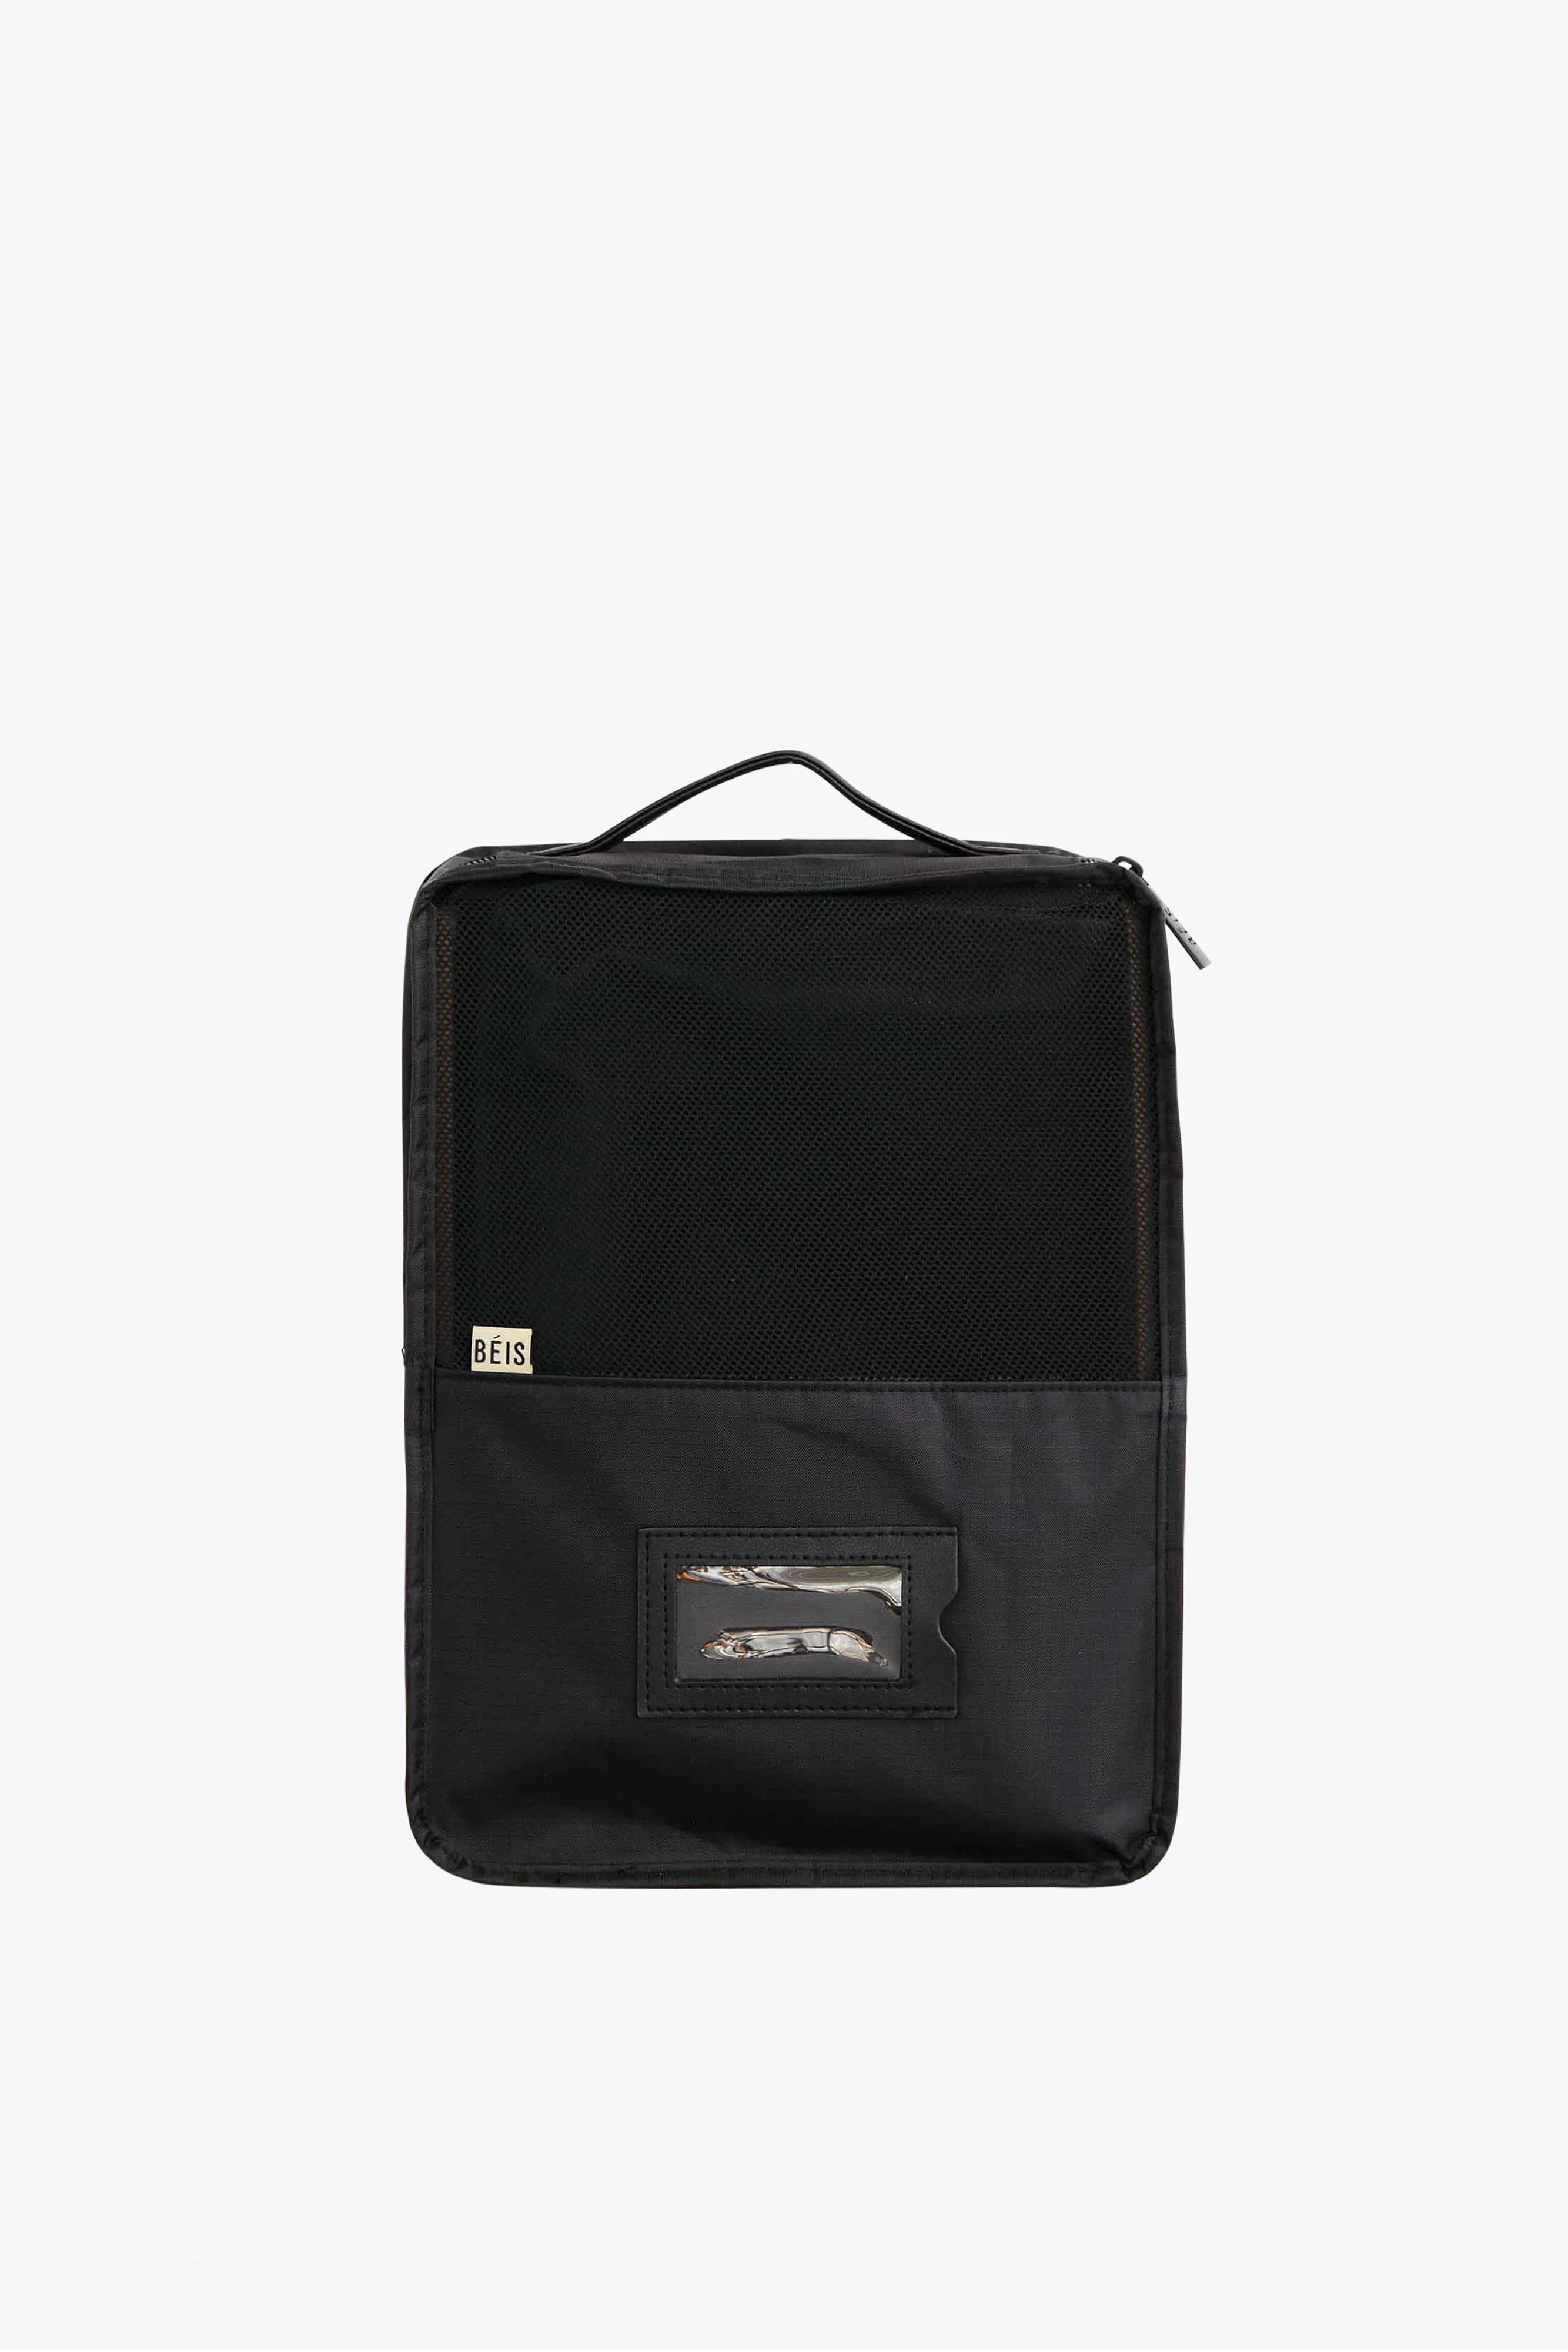 Black Polyester Travelling Shoe Storage Bag, Size: Regular